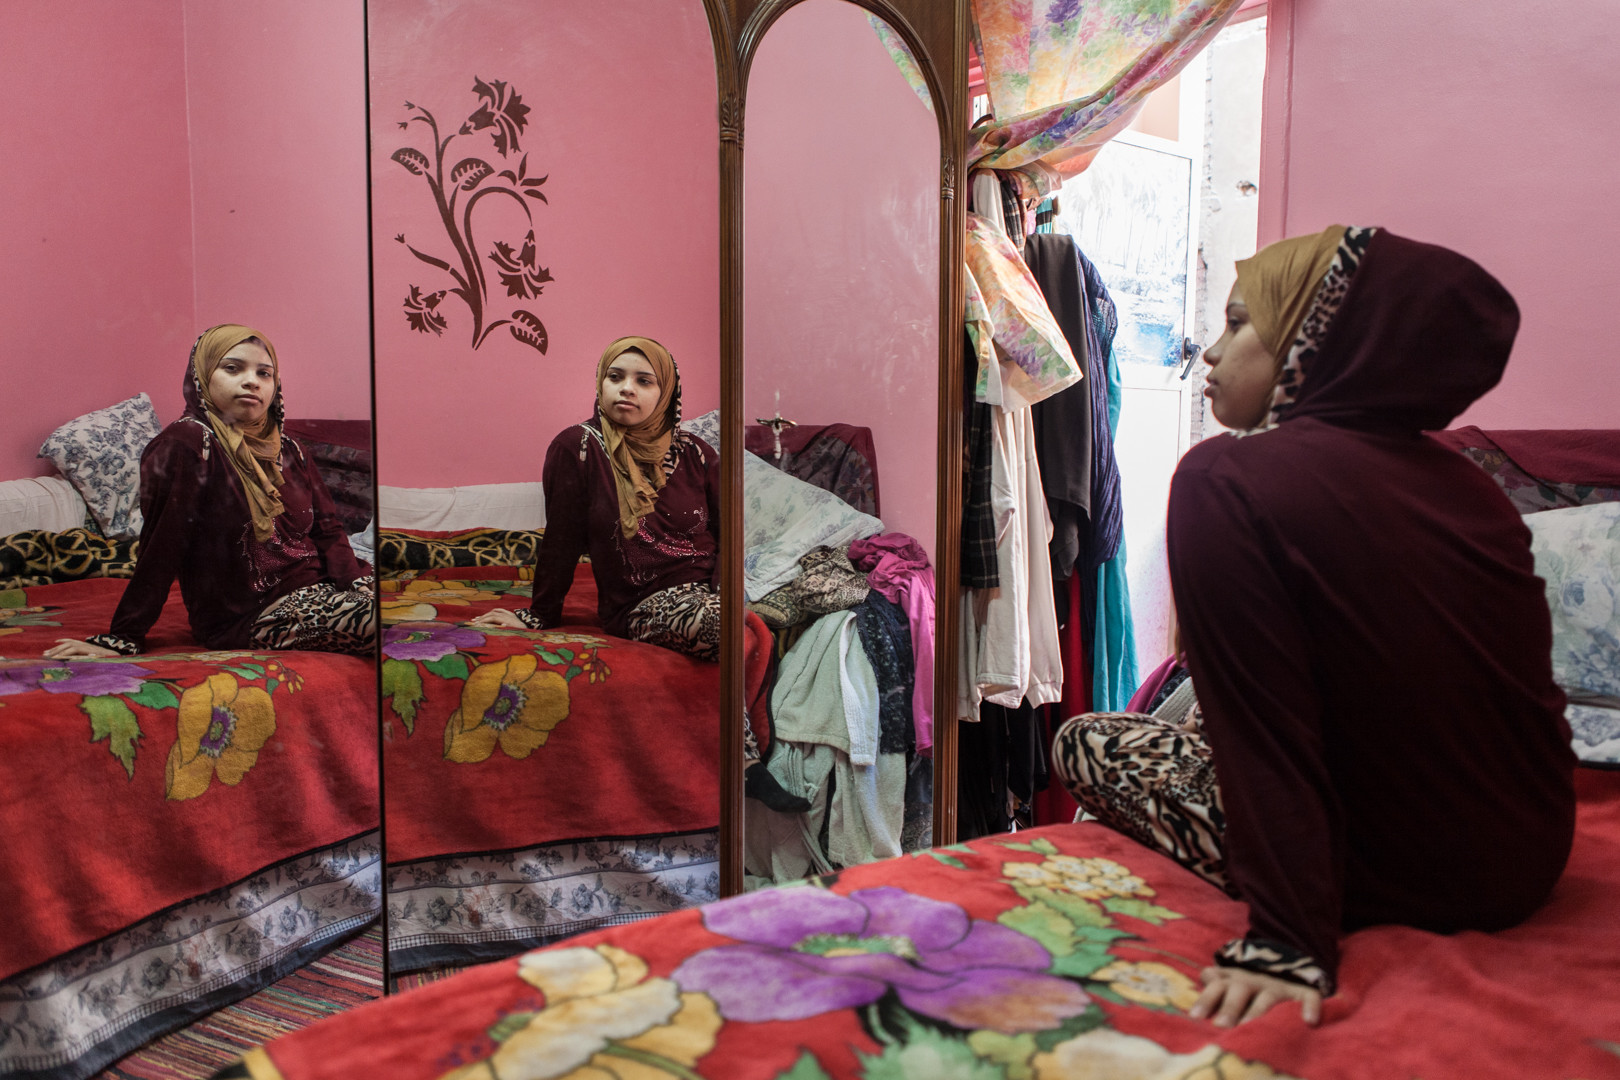 Amélie Losier: Noura Khaled Sayed Hamed in ihrem Schlafzimmer, Kairo, 2015.
In: SAYEDA, Nimbus. Kunst und Bücher, 2017